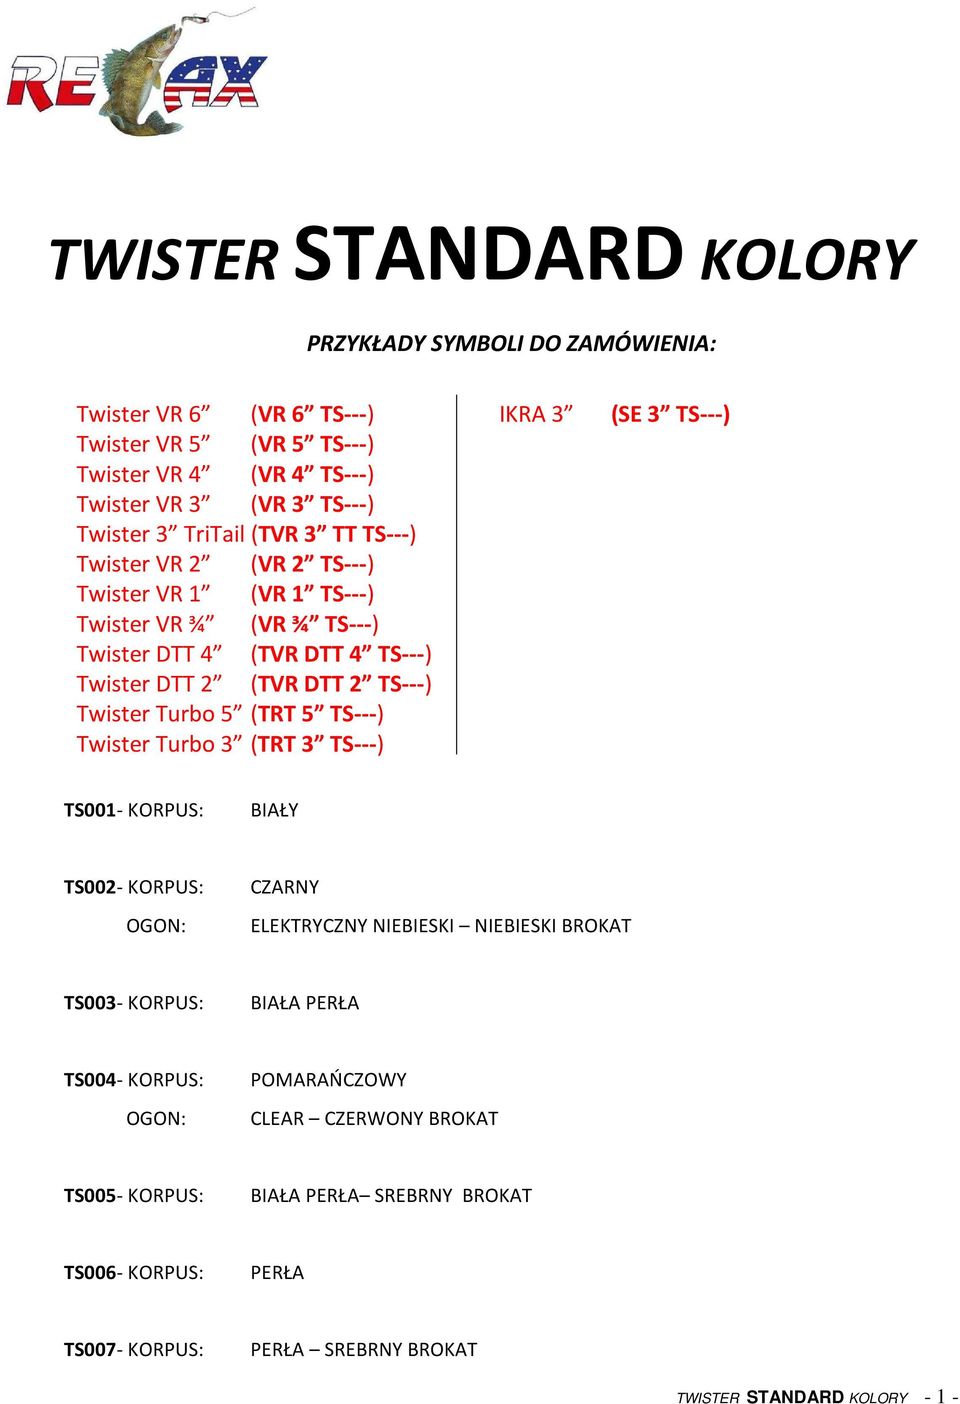 2 (TVR DTT 2 TS---) Twister Turbo 5 (TRT 5 TS---) Twister Turbo 3 (TRT 3 TS---) TS001- KORPUS: TS002- KORPUS: CZARNY ELEKTRYCZNY NIEBIESKI NIEBIESKI BROKAT TS003-